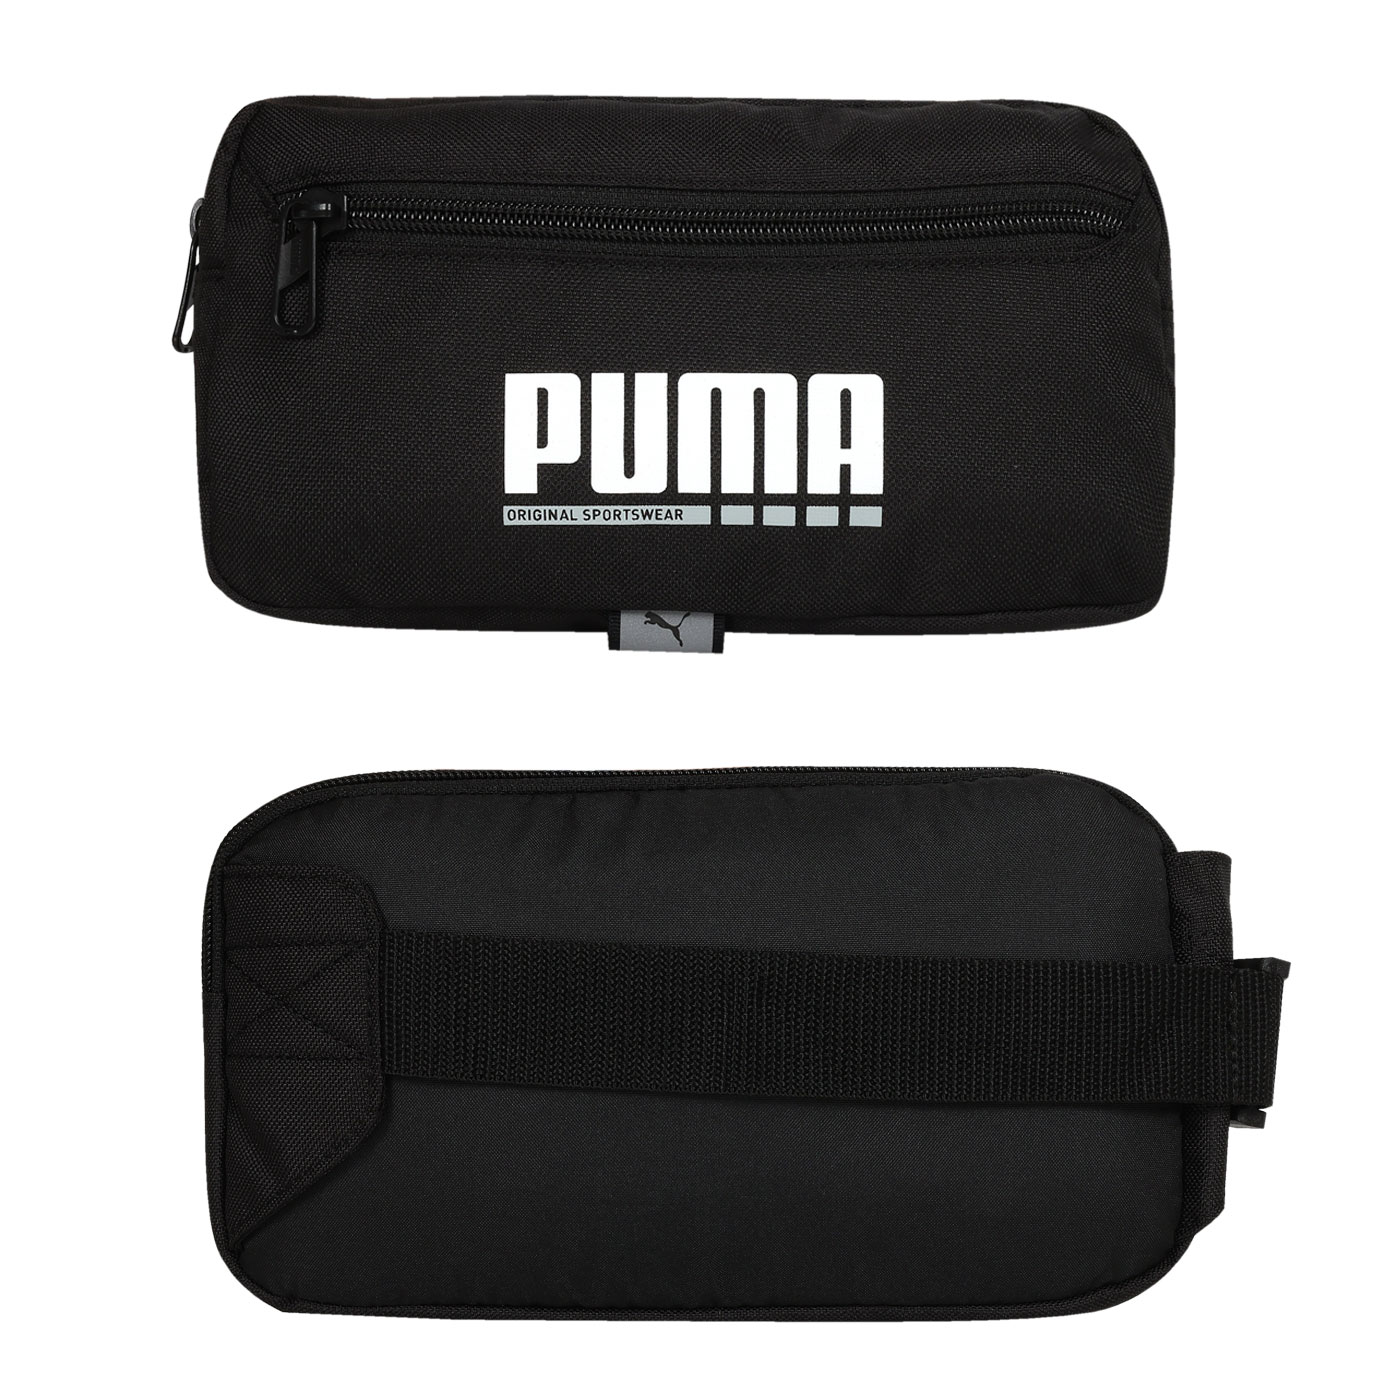 PUMA Plus小腰包  09096001 - 黑白灰